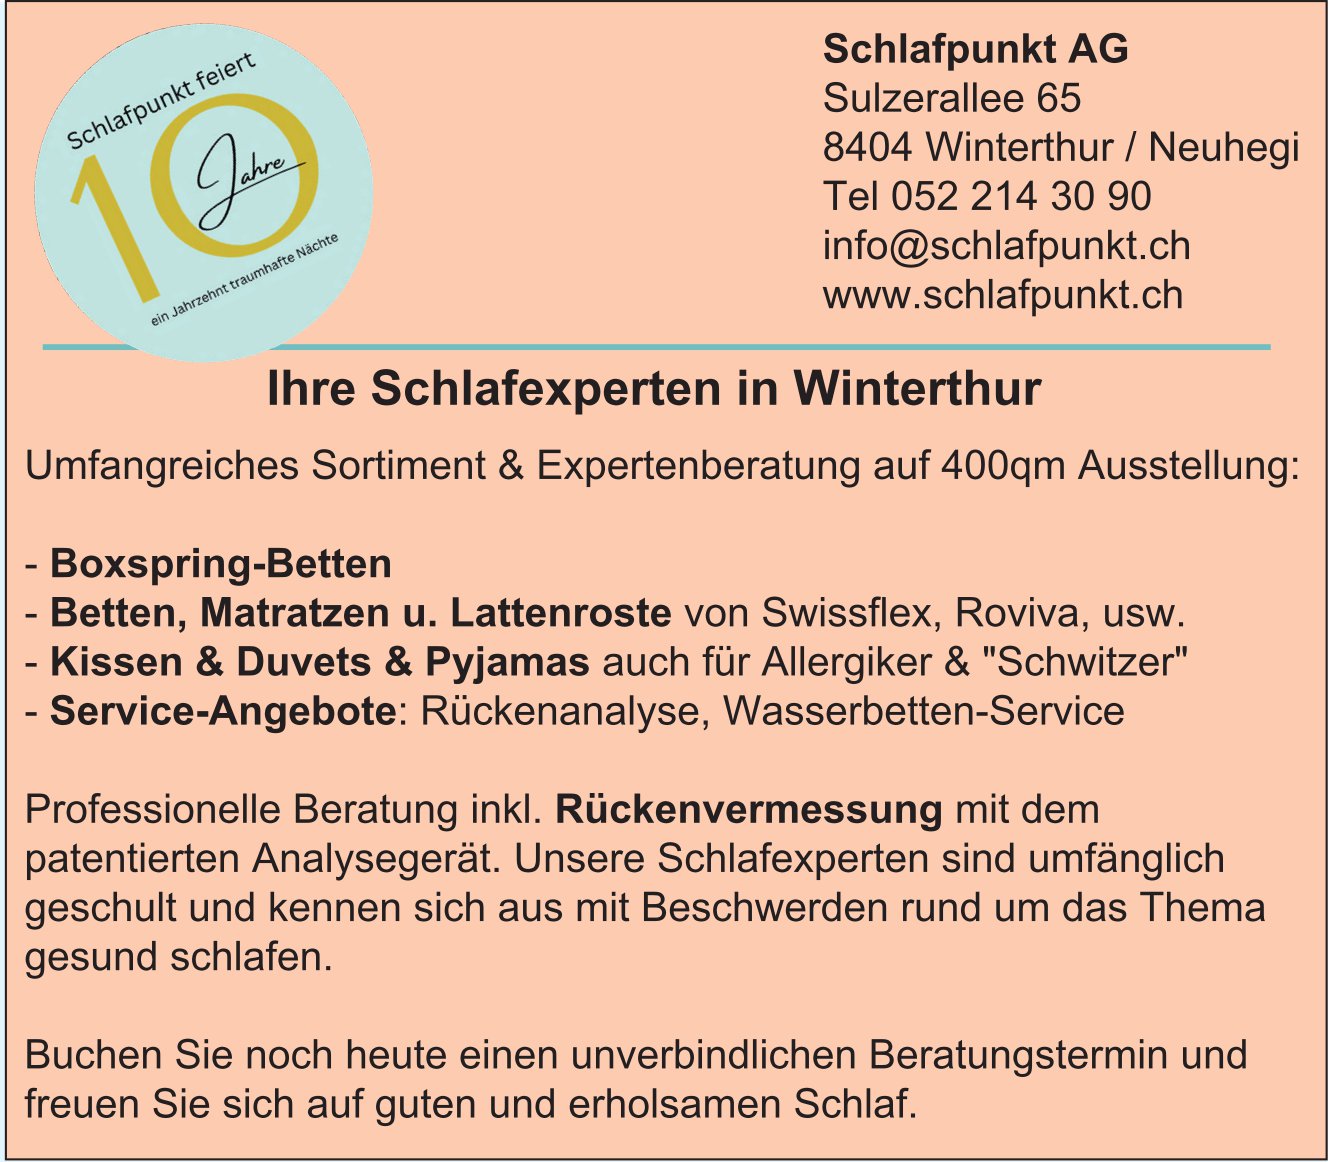 Schlafpunkt AG, Winterthur - Ihre Schlafexperten... Umfangreiches Sortiment & Expertenberatung...